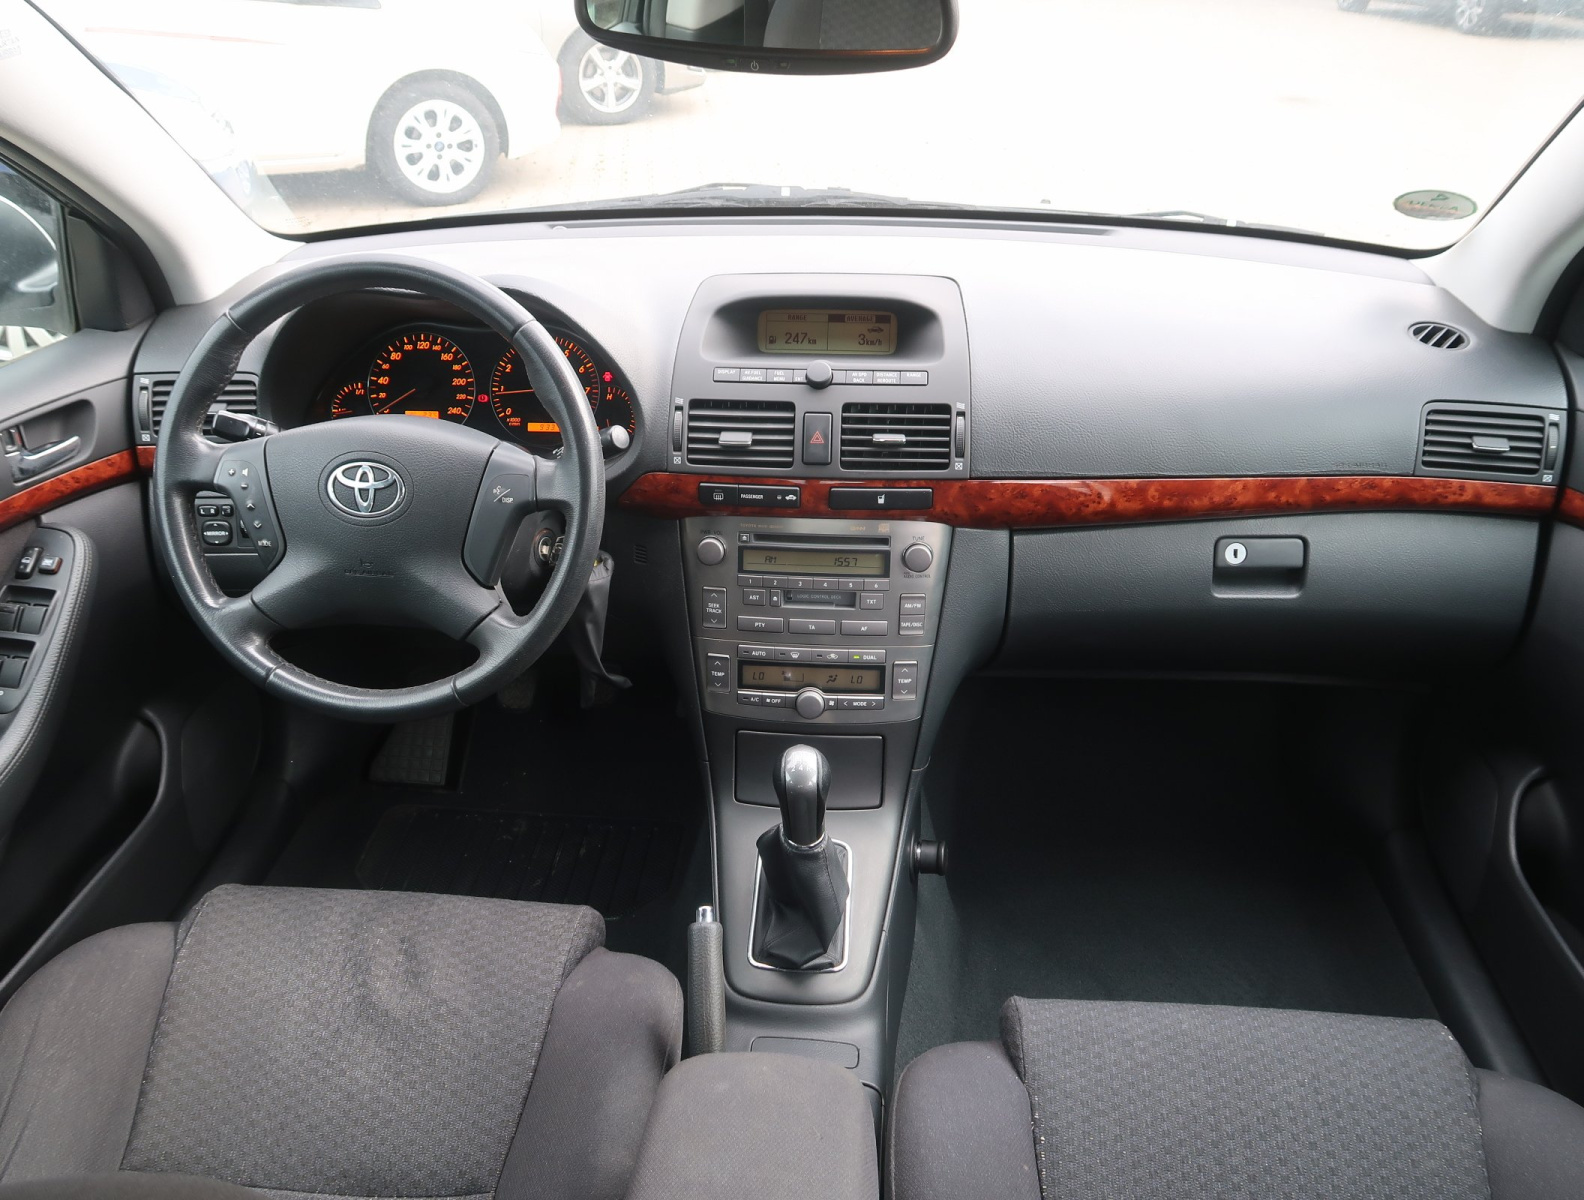 Toyota Avensis, 2004, 2.0, 108kW